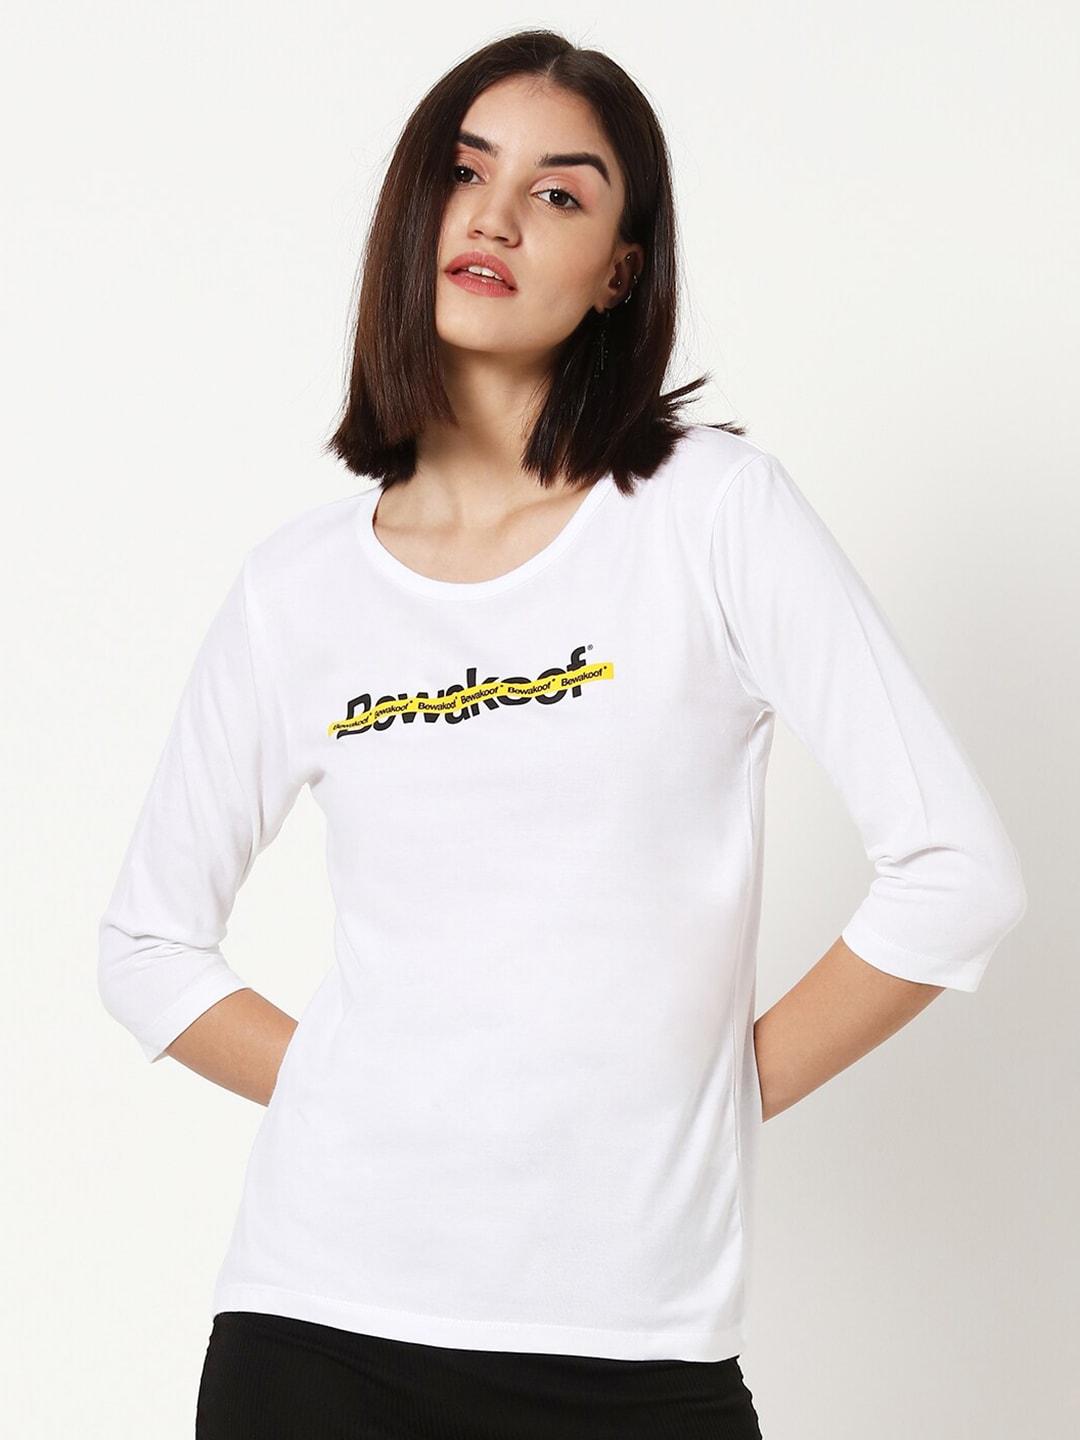 bewakoof-women-white-typography-t-shirt